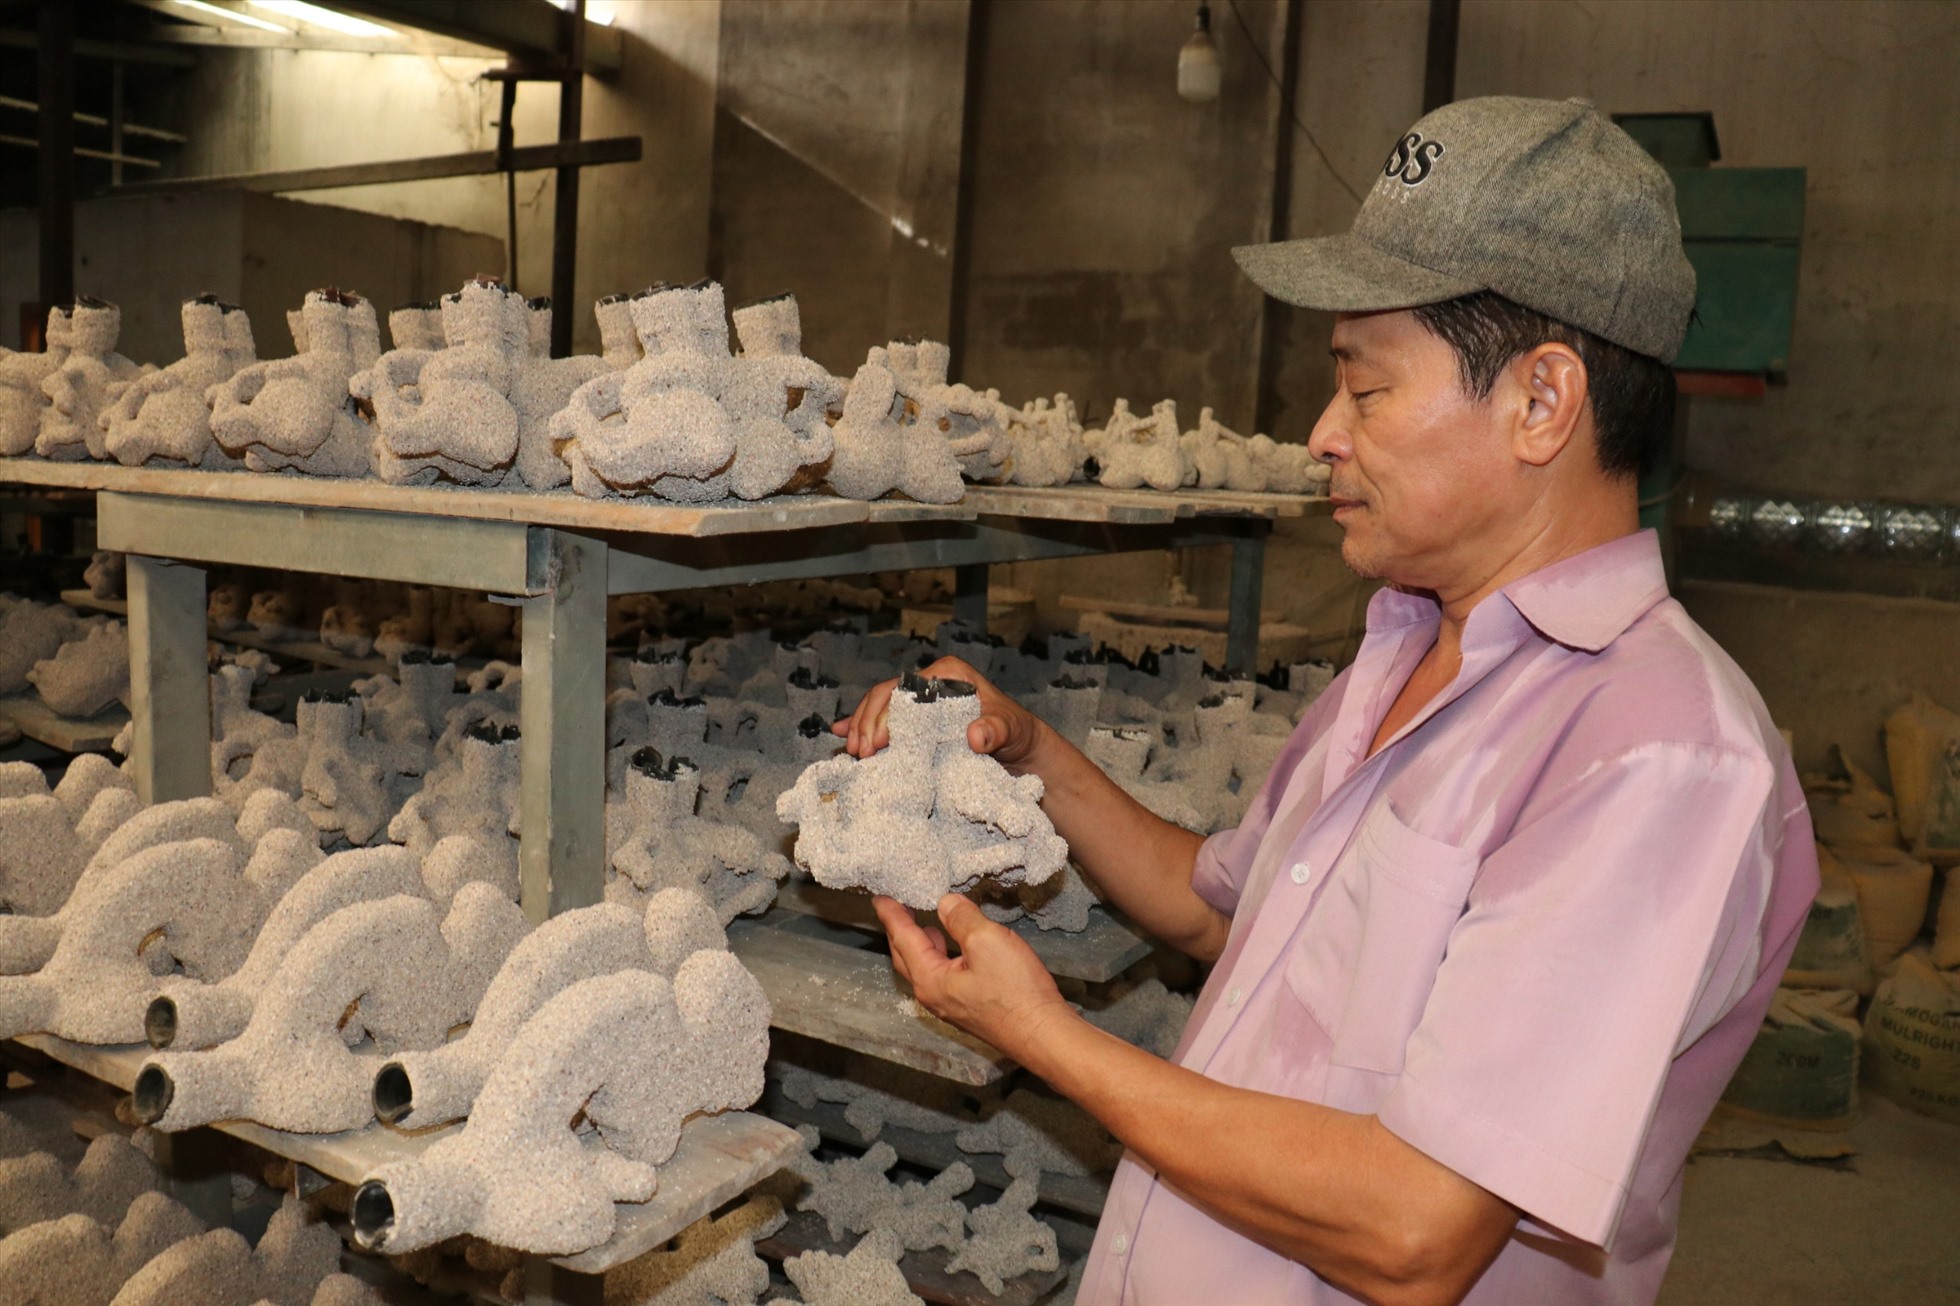 Ông Trần Quốc Kiển, chủ cơ sở lư đồng Quốc Kiển cho biết: “Các tháng cuối năm là thời gian cao điểm để sản xuất lư đồng. Tuy vậy, lượng đơn đặt hàng năm nay đi giảm 50% so với năm trước“.